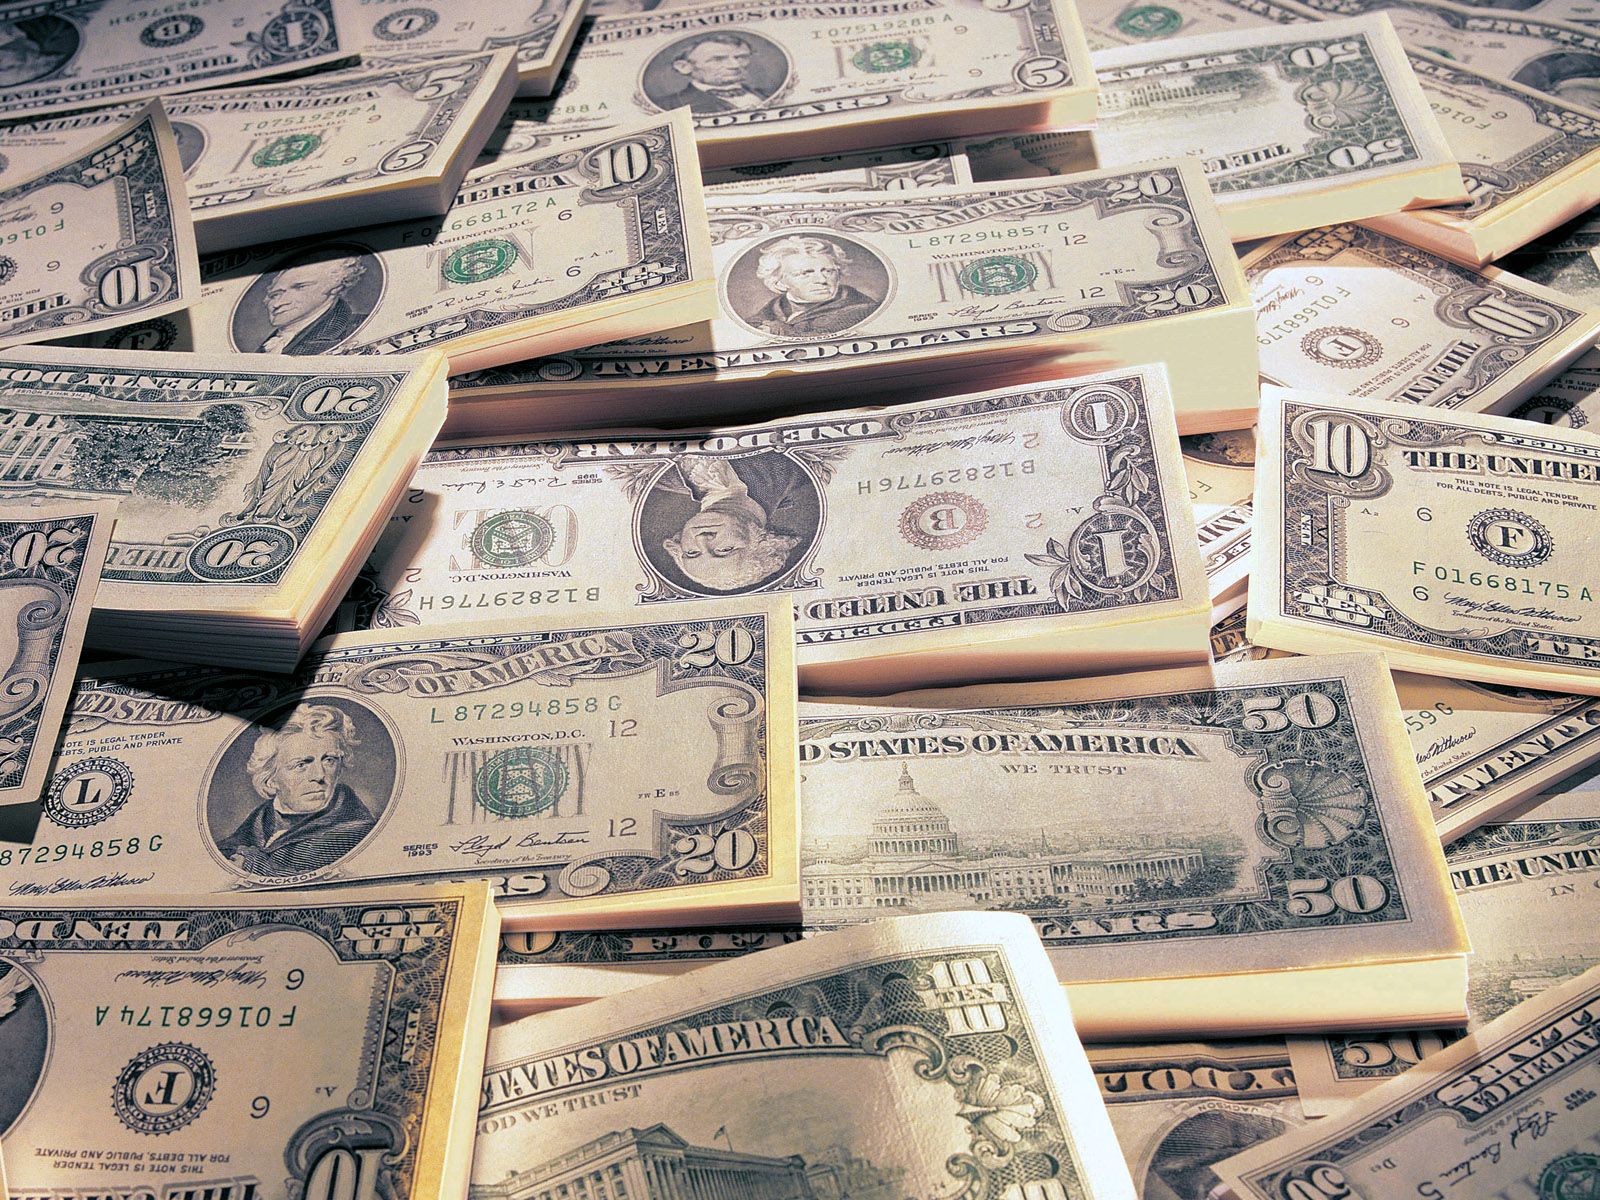 许许多多的美元钞票堆积在一起上面的富兰克林头像十分清晰商业金融素材设计